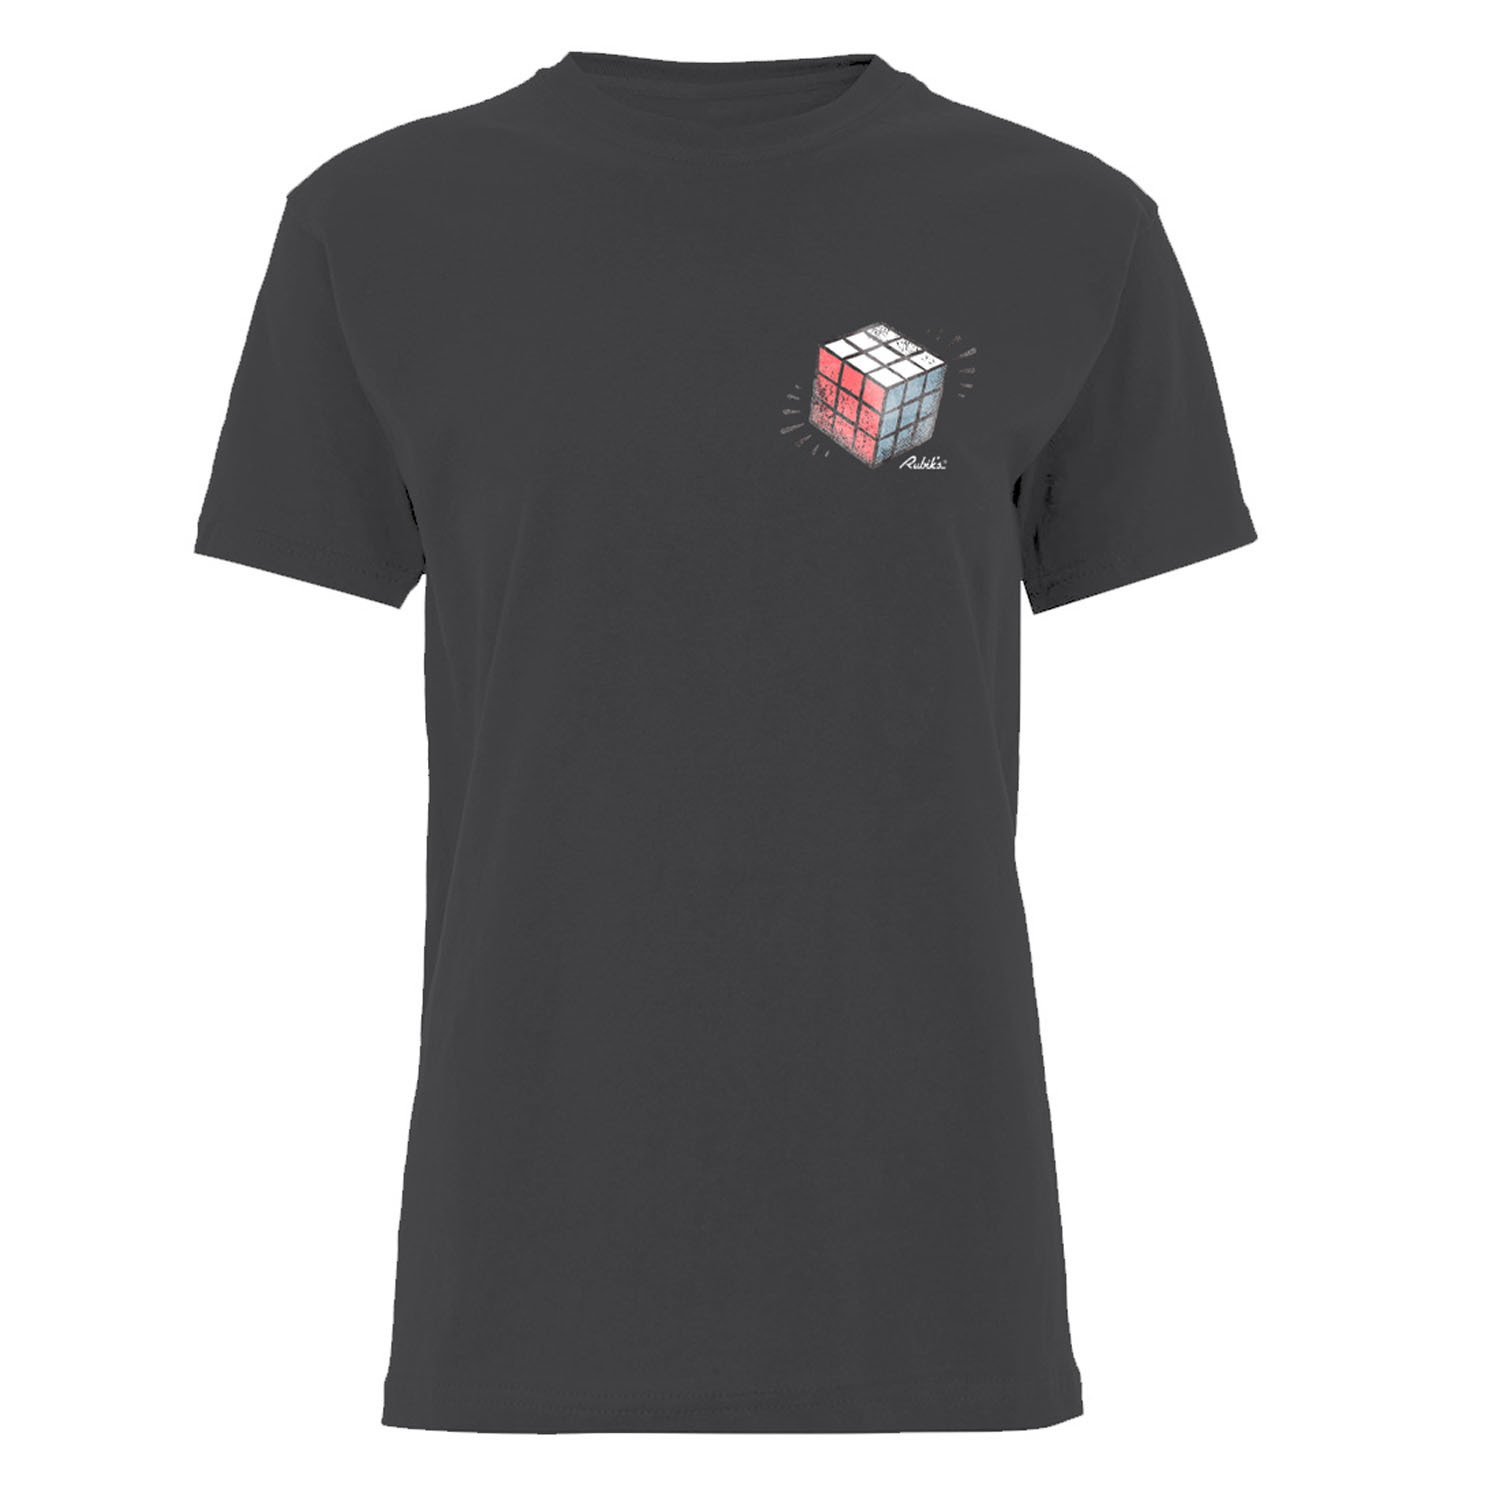 Rubix Cube T-Shirt - Black / M Image 1